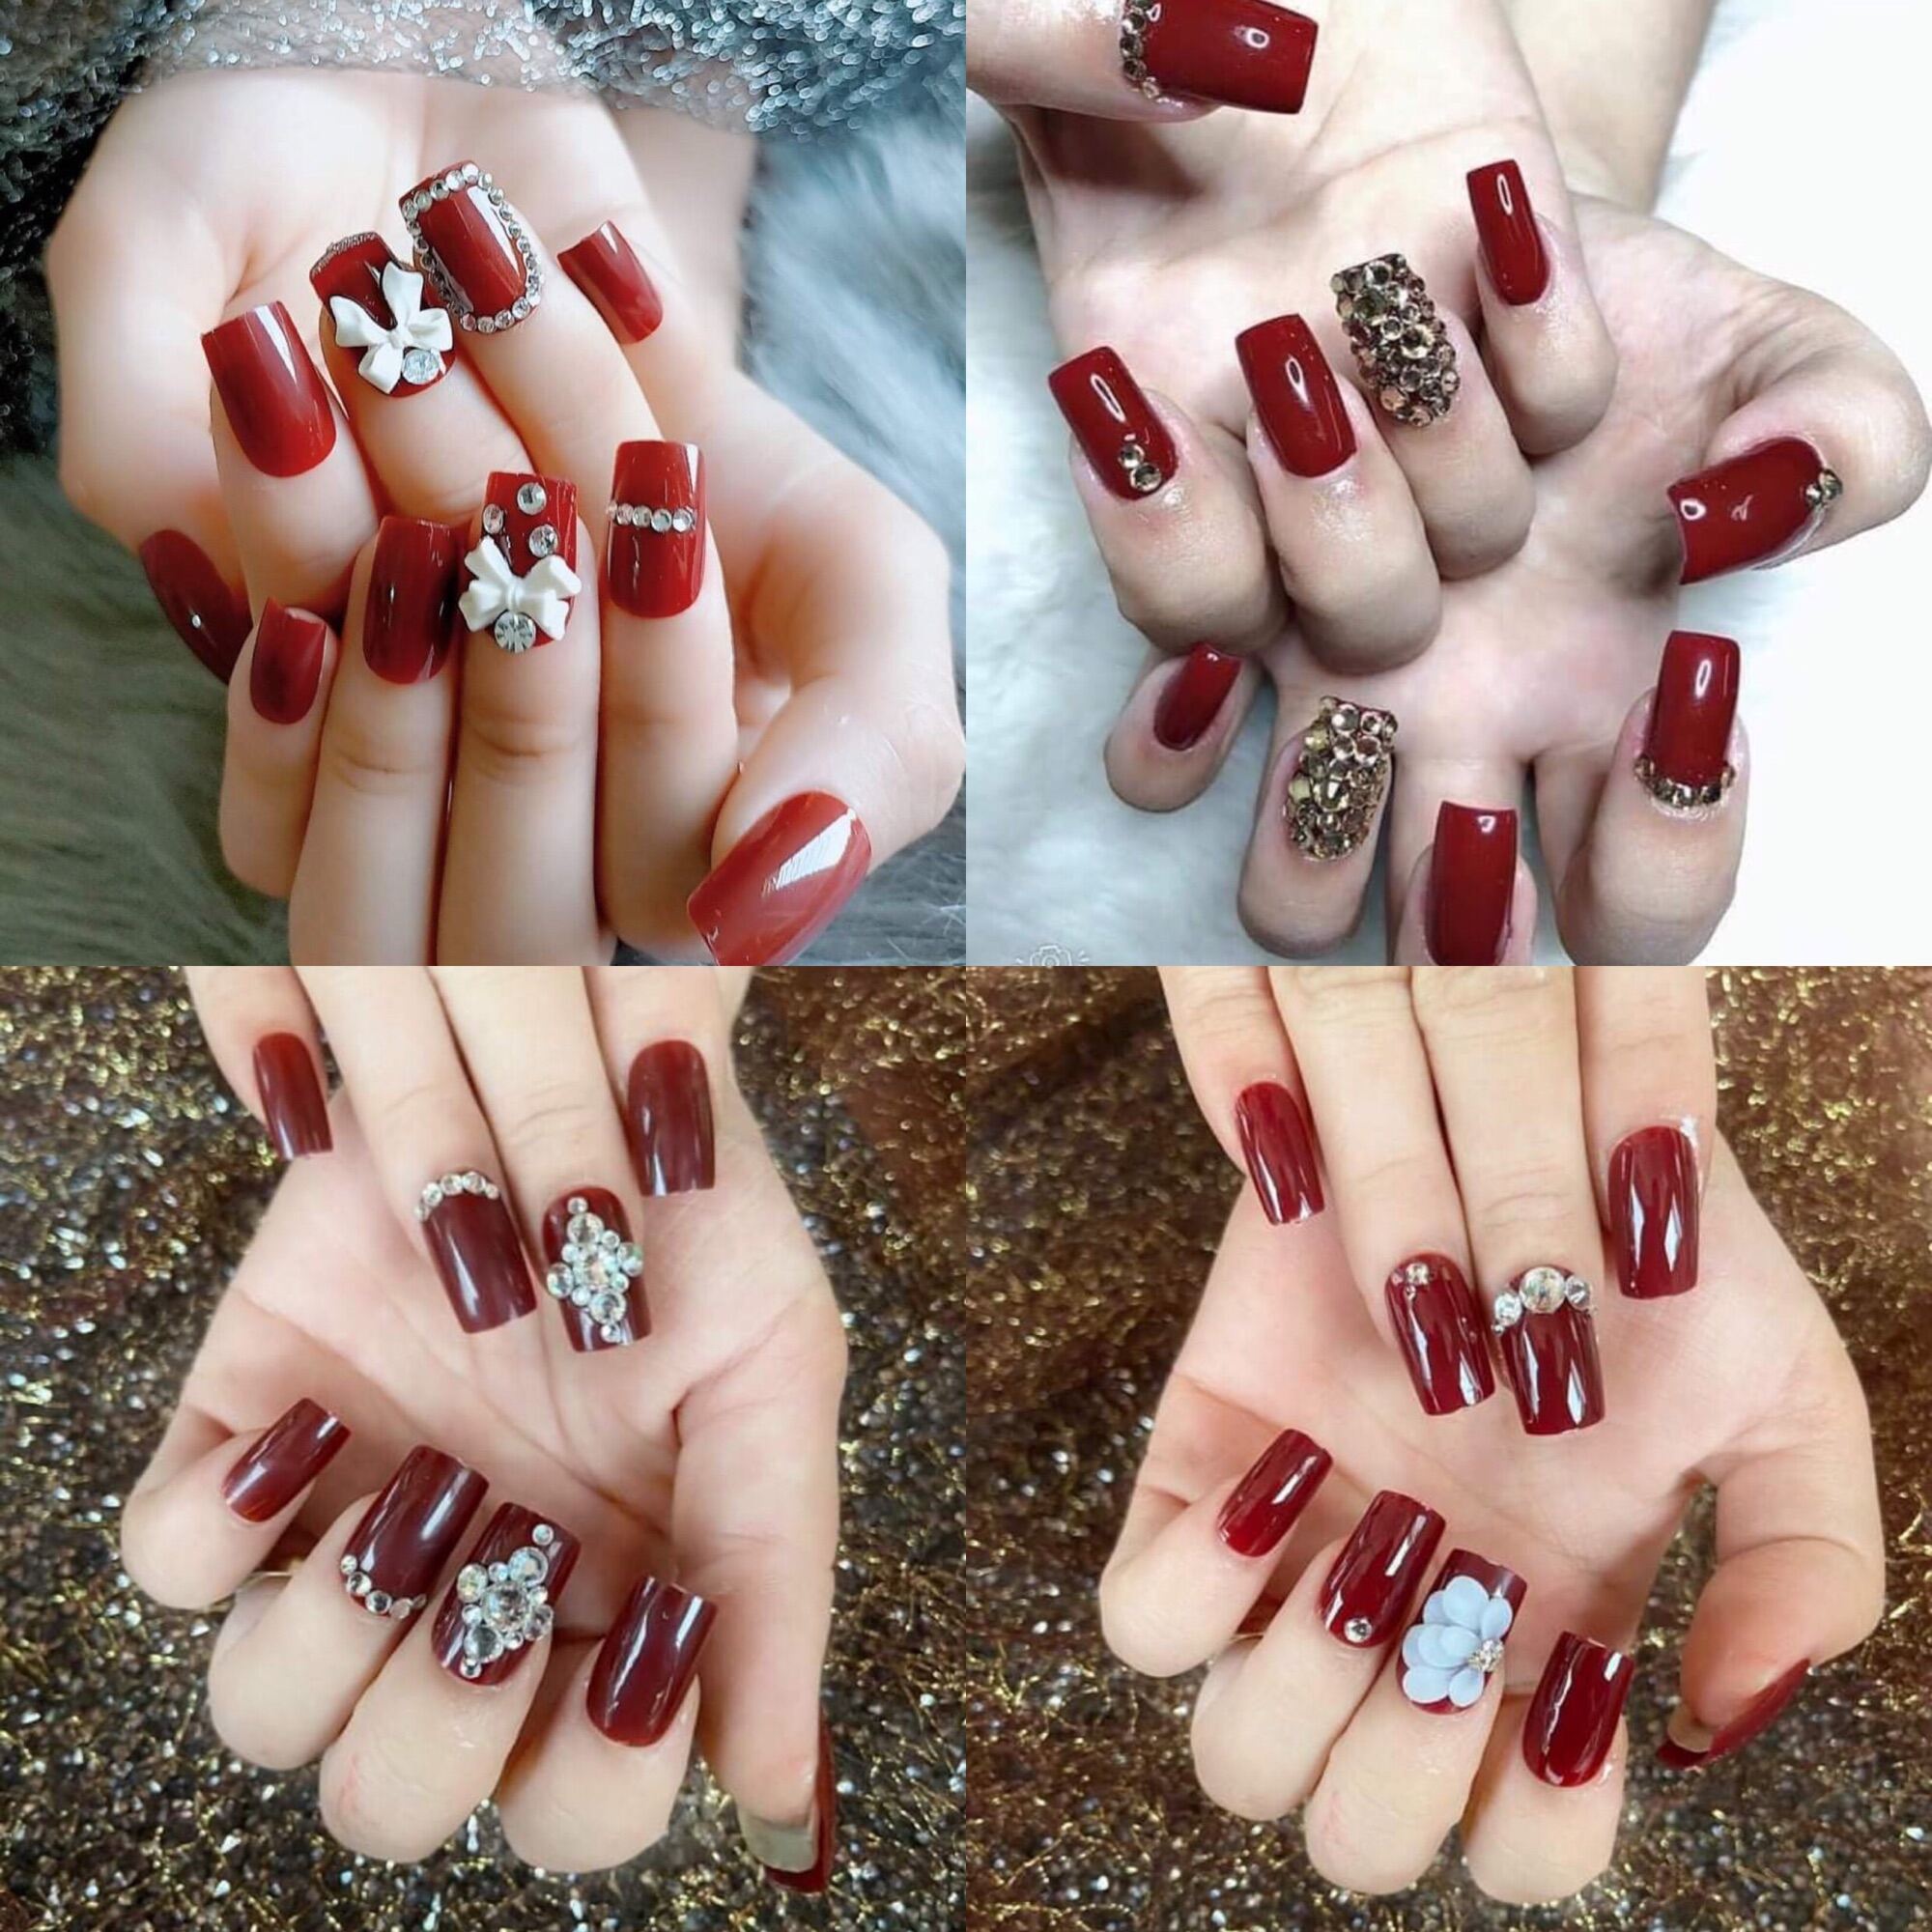 Tổng hợp mẫu nail màu đỏ đất thời thượng dành cho các quý cô | IVY moda